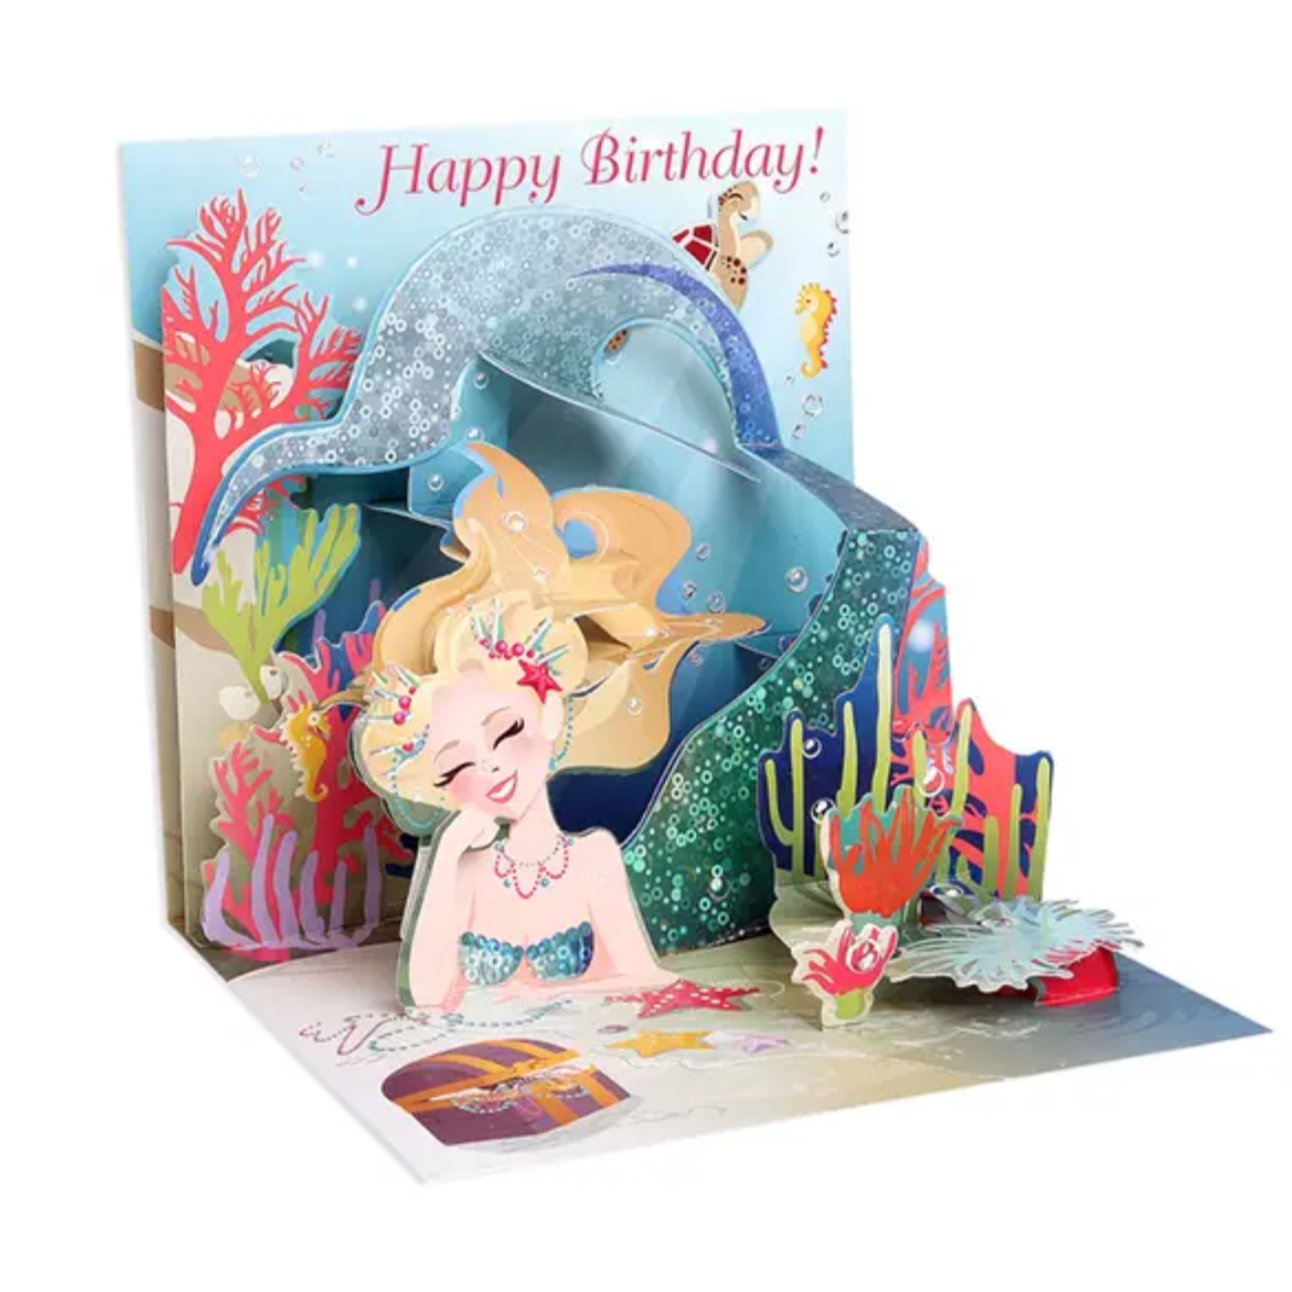 Mermaids Birthday Treasures Pop-up Card